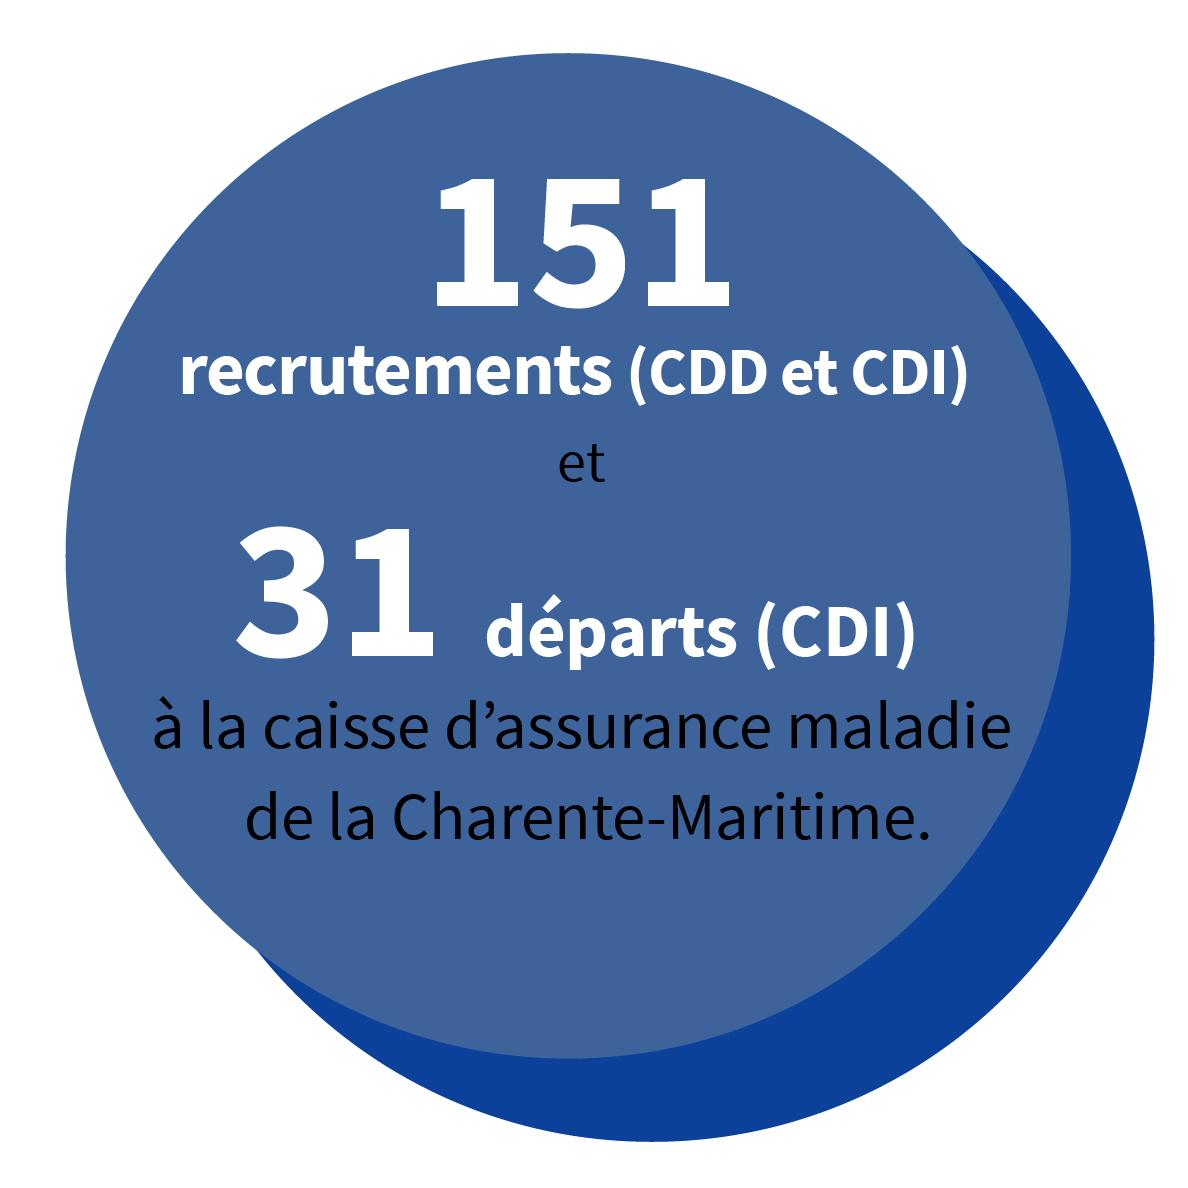 151 recrutements (CDD et CDI) et 31 départs (CDI) à la caisse d’assurance maladie de la Charente-Maritime.